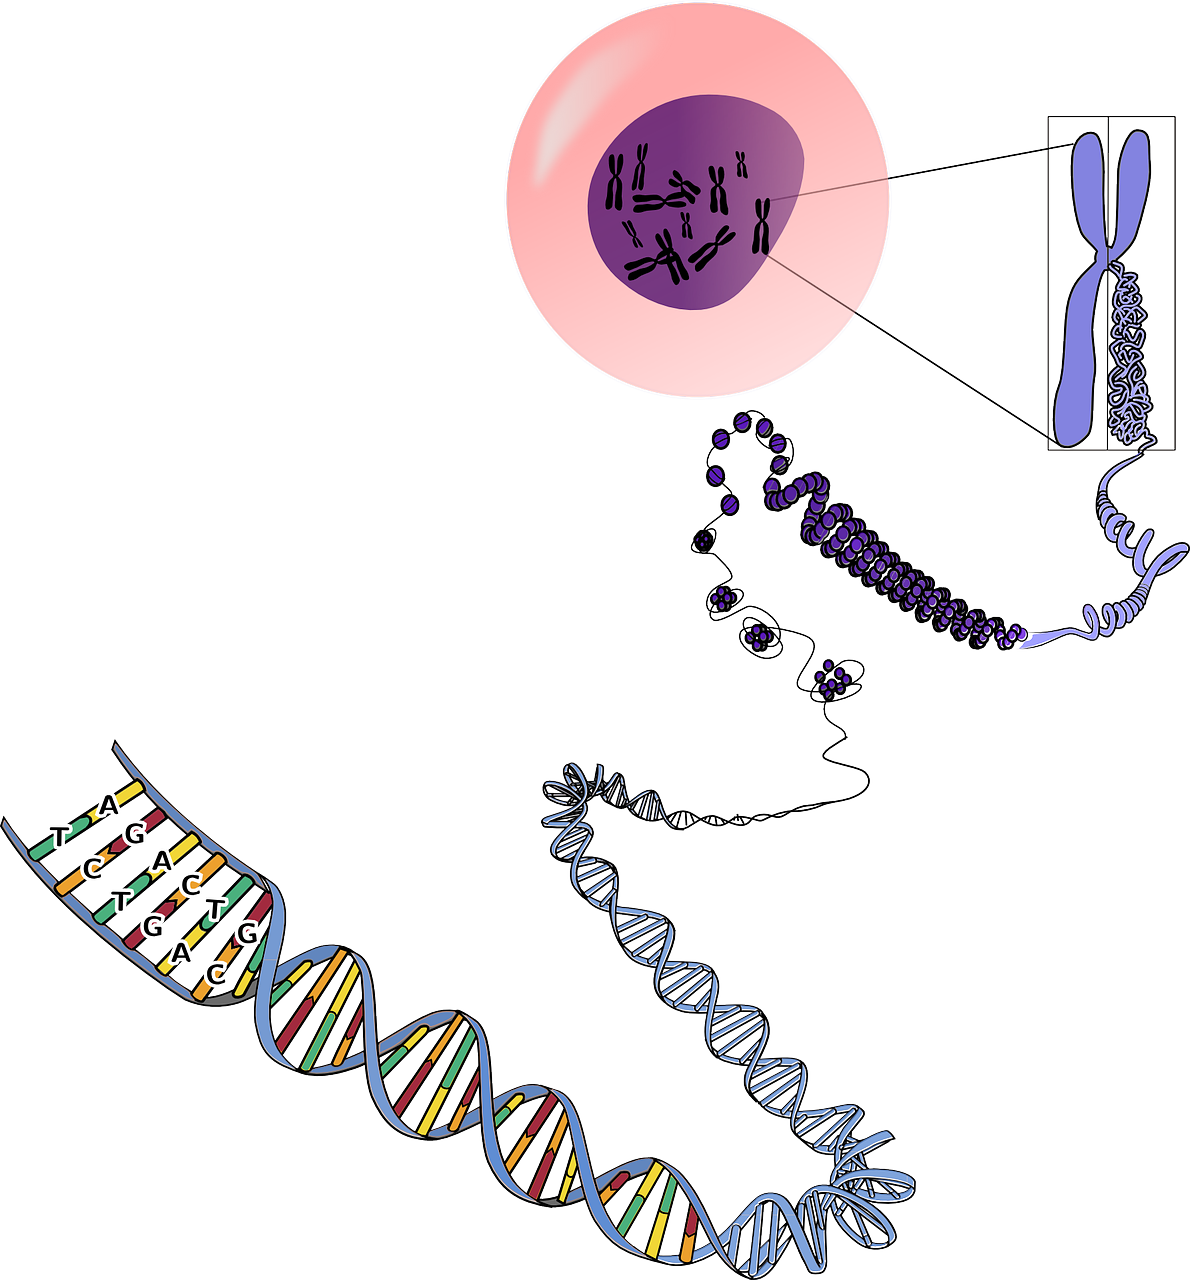 Genetika, Chromosomos, Rna, Dna, Biologija, Mutacijos, Mėlynas, Rožinis, Violetinė, Mokslas